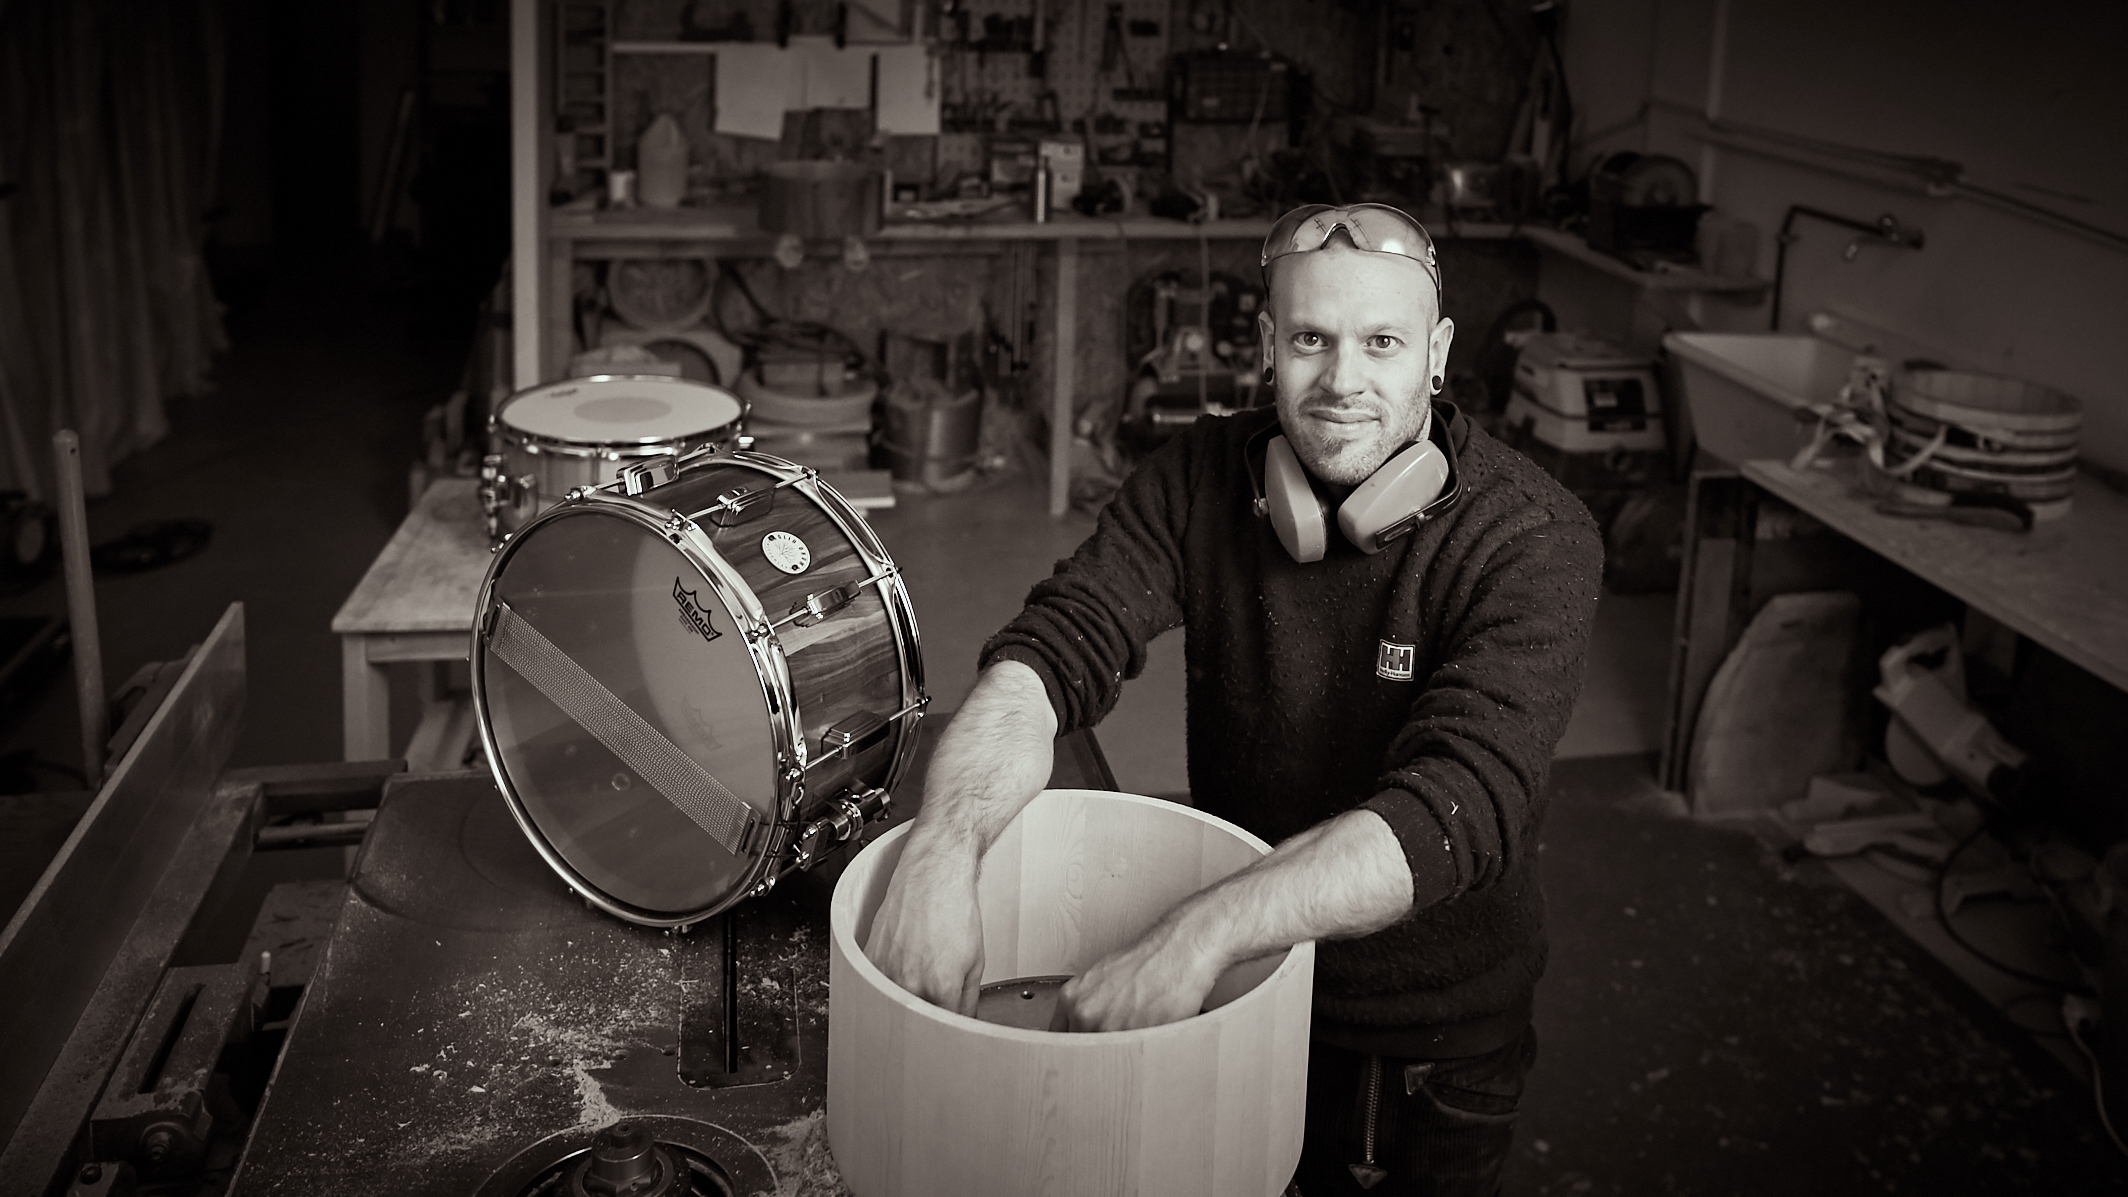 Christoph Anlauf, Drumbuilder from Switzerland